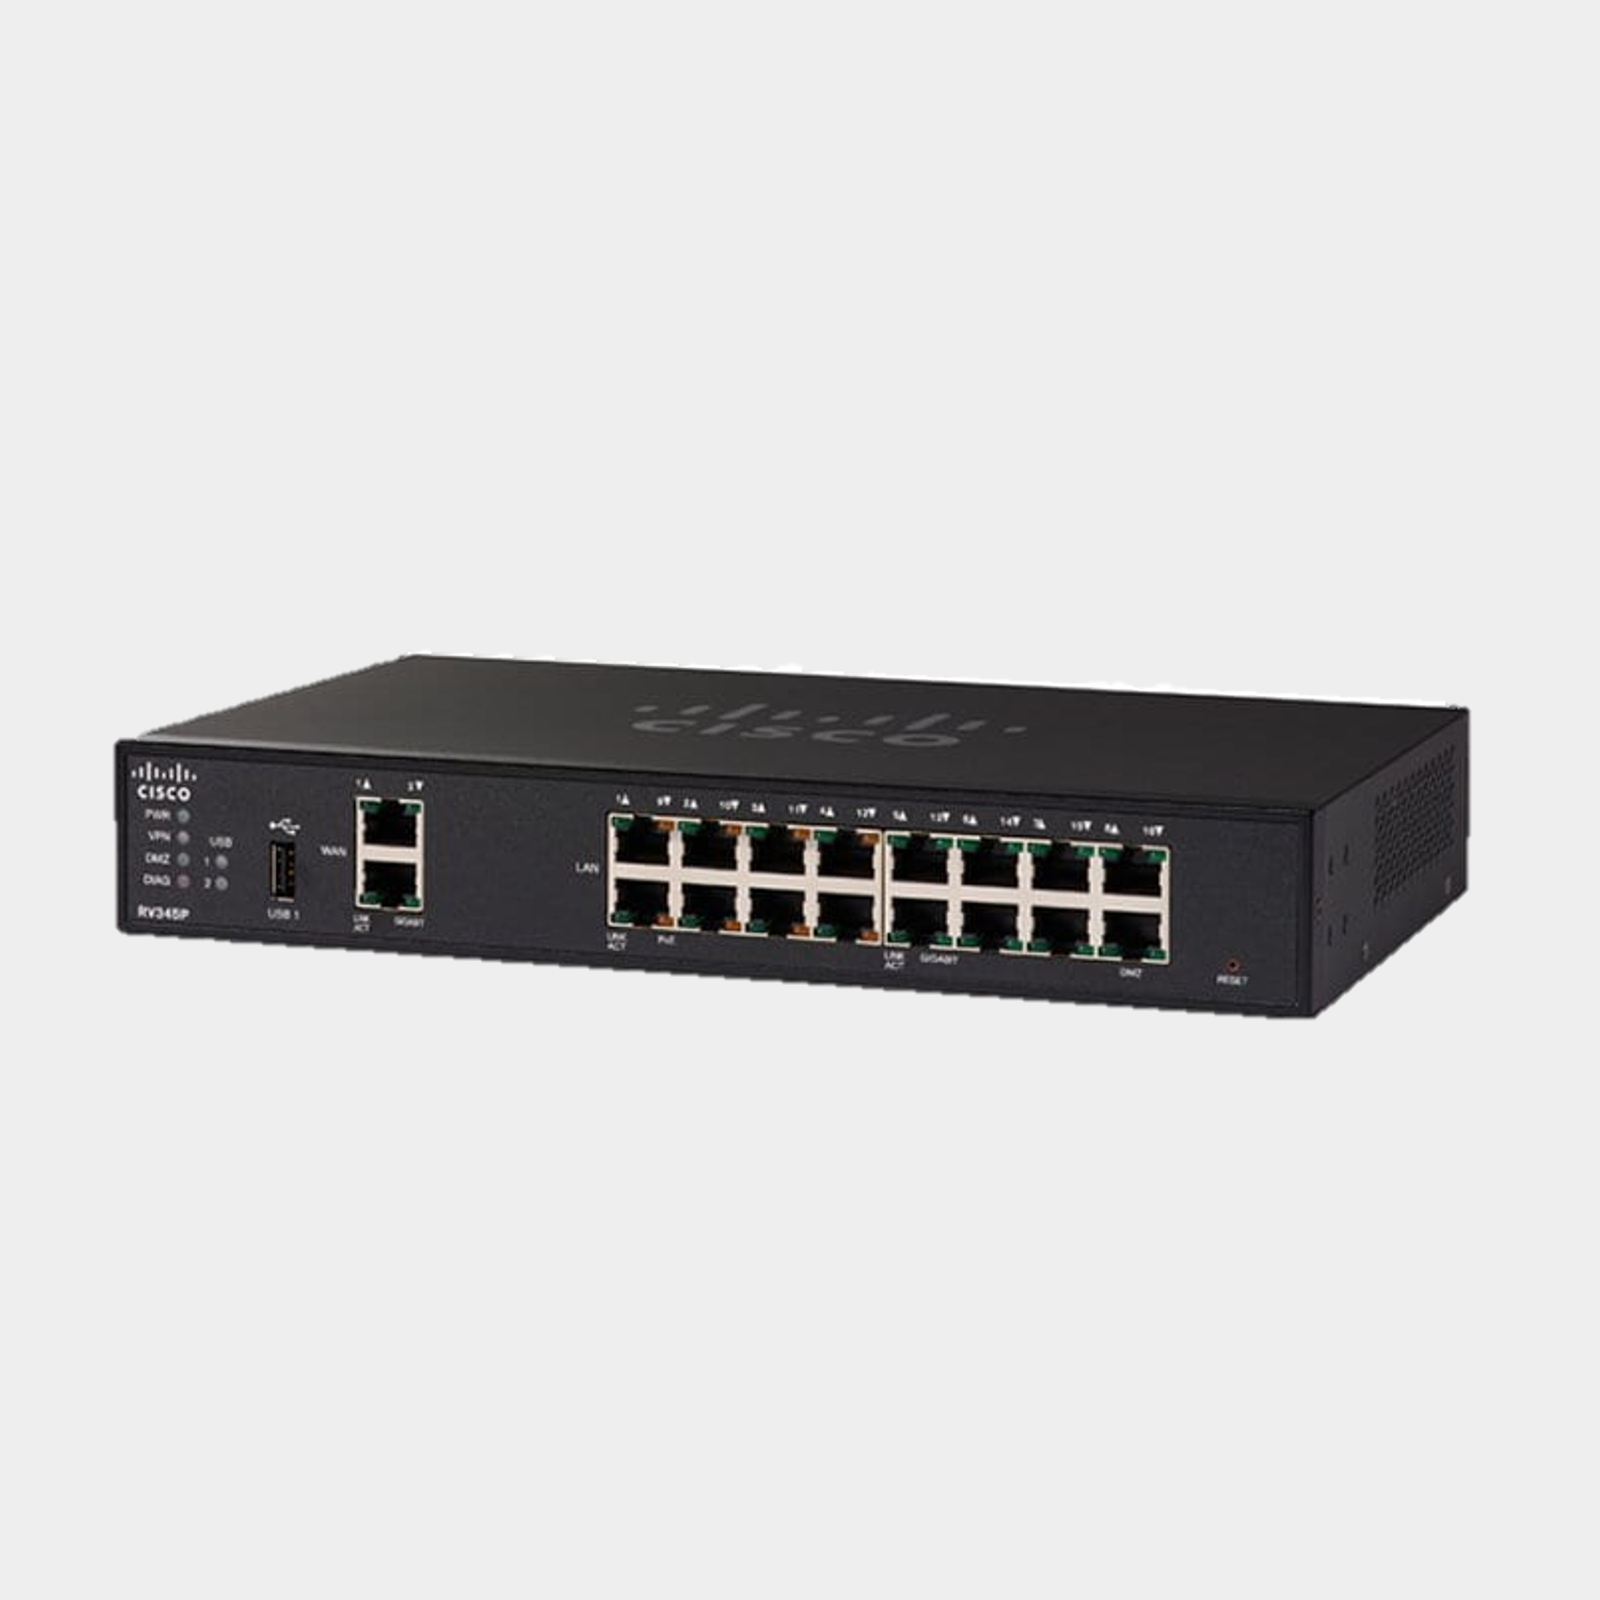 CISCO RV345P Dual WAN 16-Port Gigabit Ethernet POE VPN Router Rack Mount (RV345P-K9-G5)